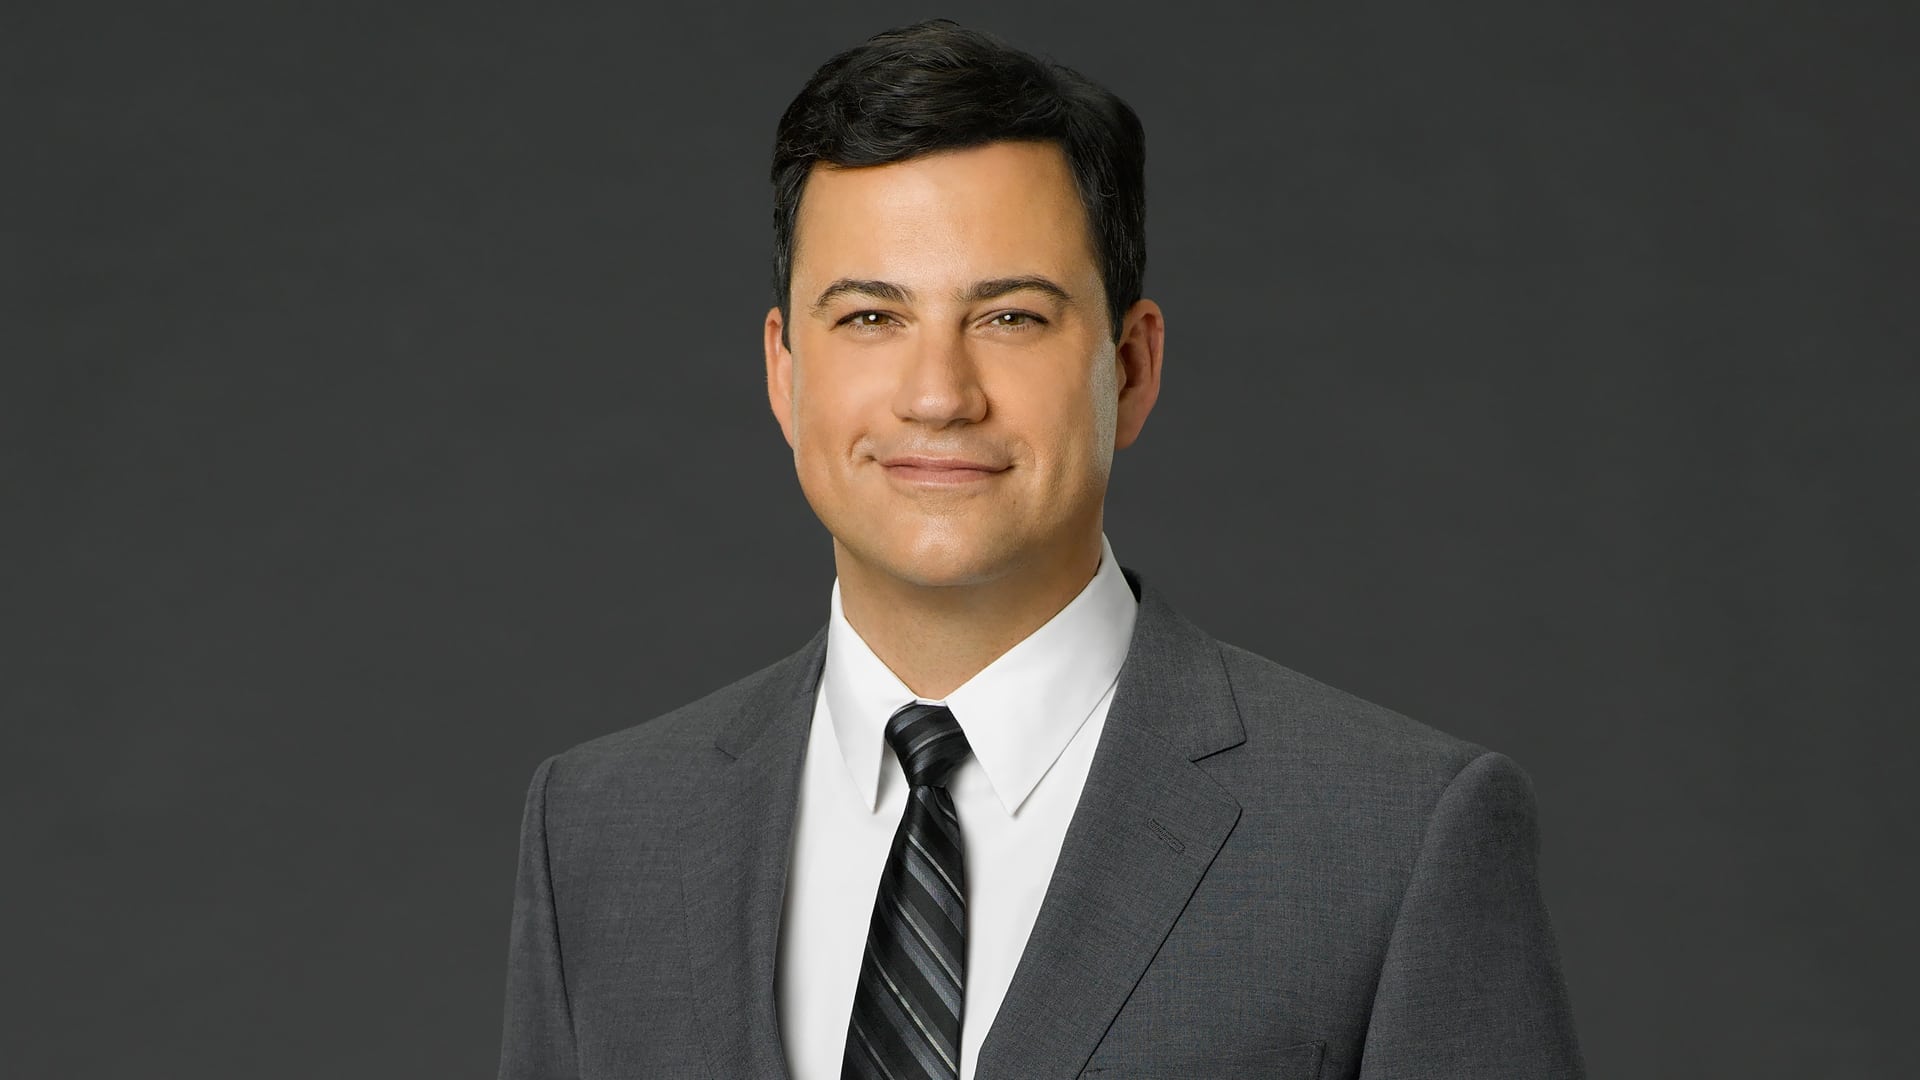 Jimmy Kimmel Live! - Season 22 Episode 15